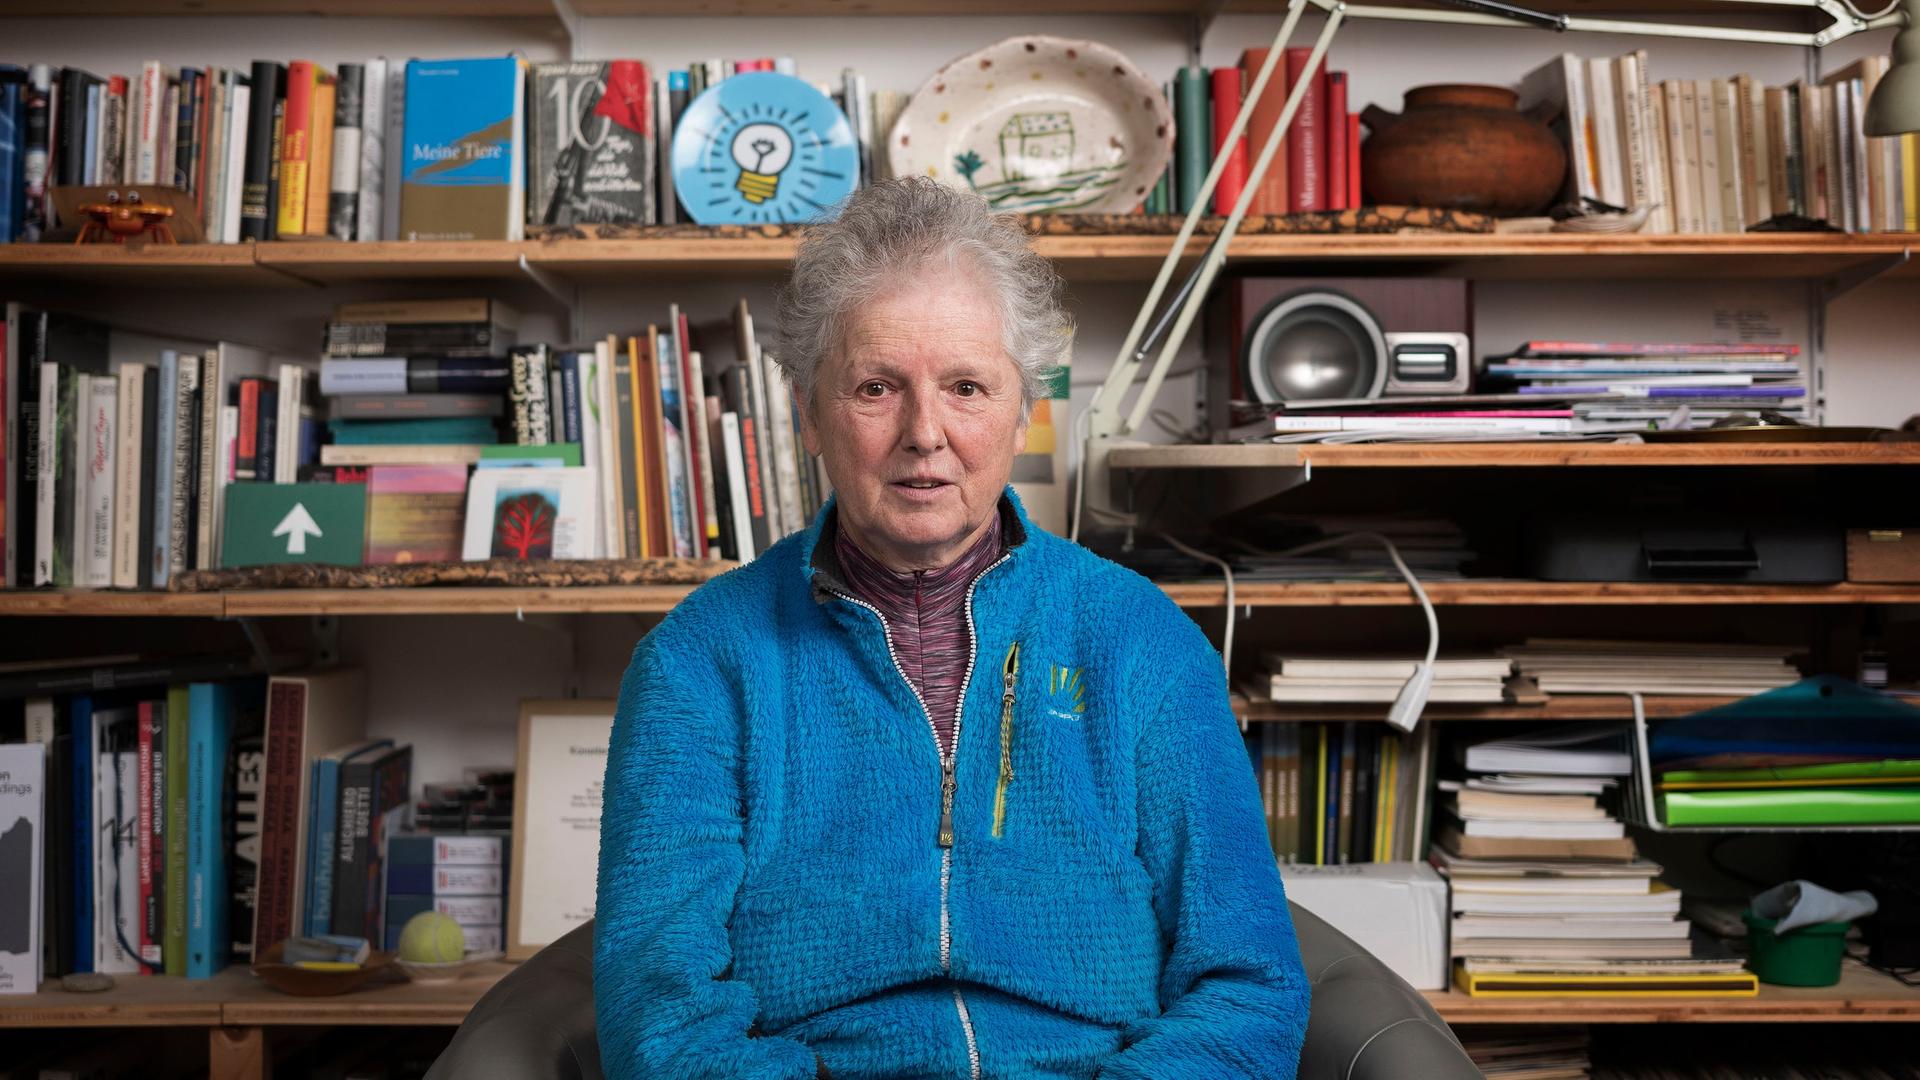 Miriam Cahn sitzt vor ihrem Bücherregal. Sie trägt kurzes graues Haar und eine leuchtend blaue Jacke.